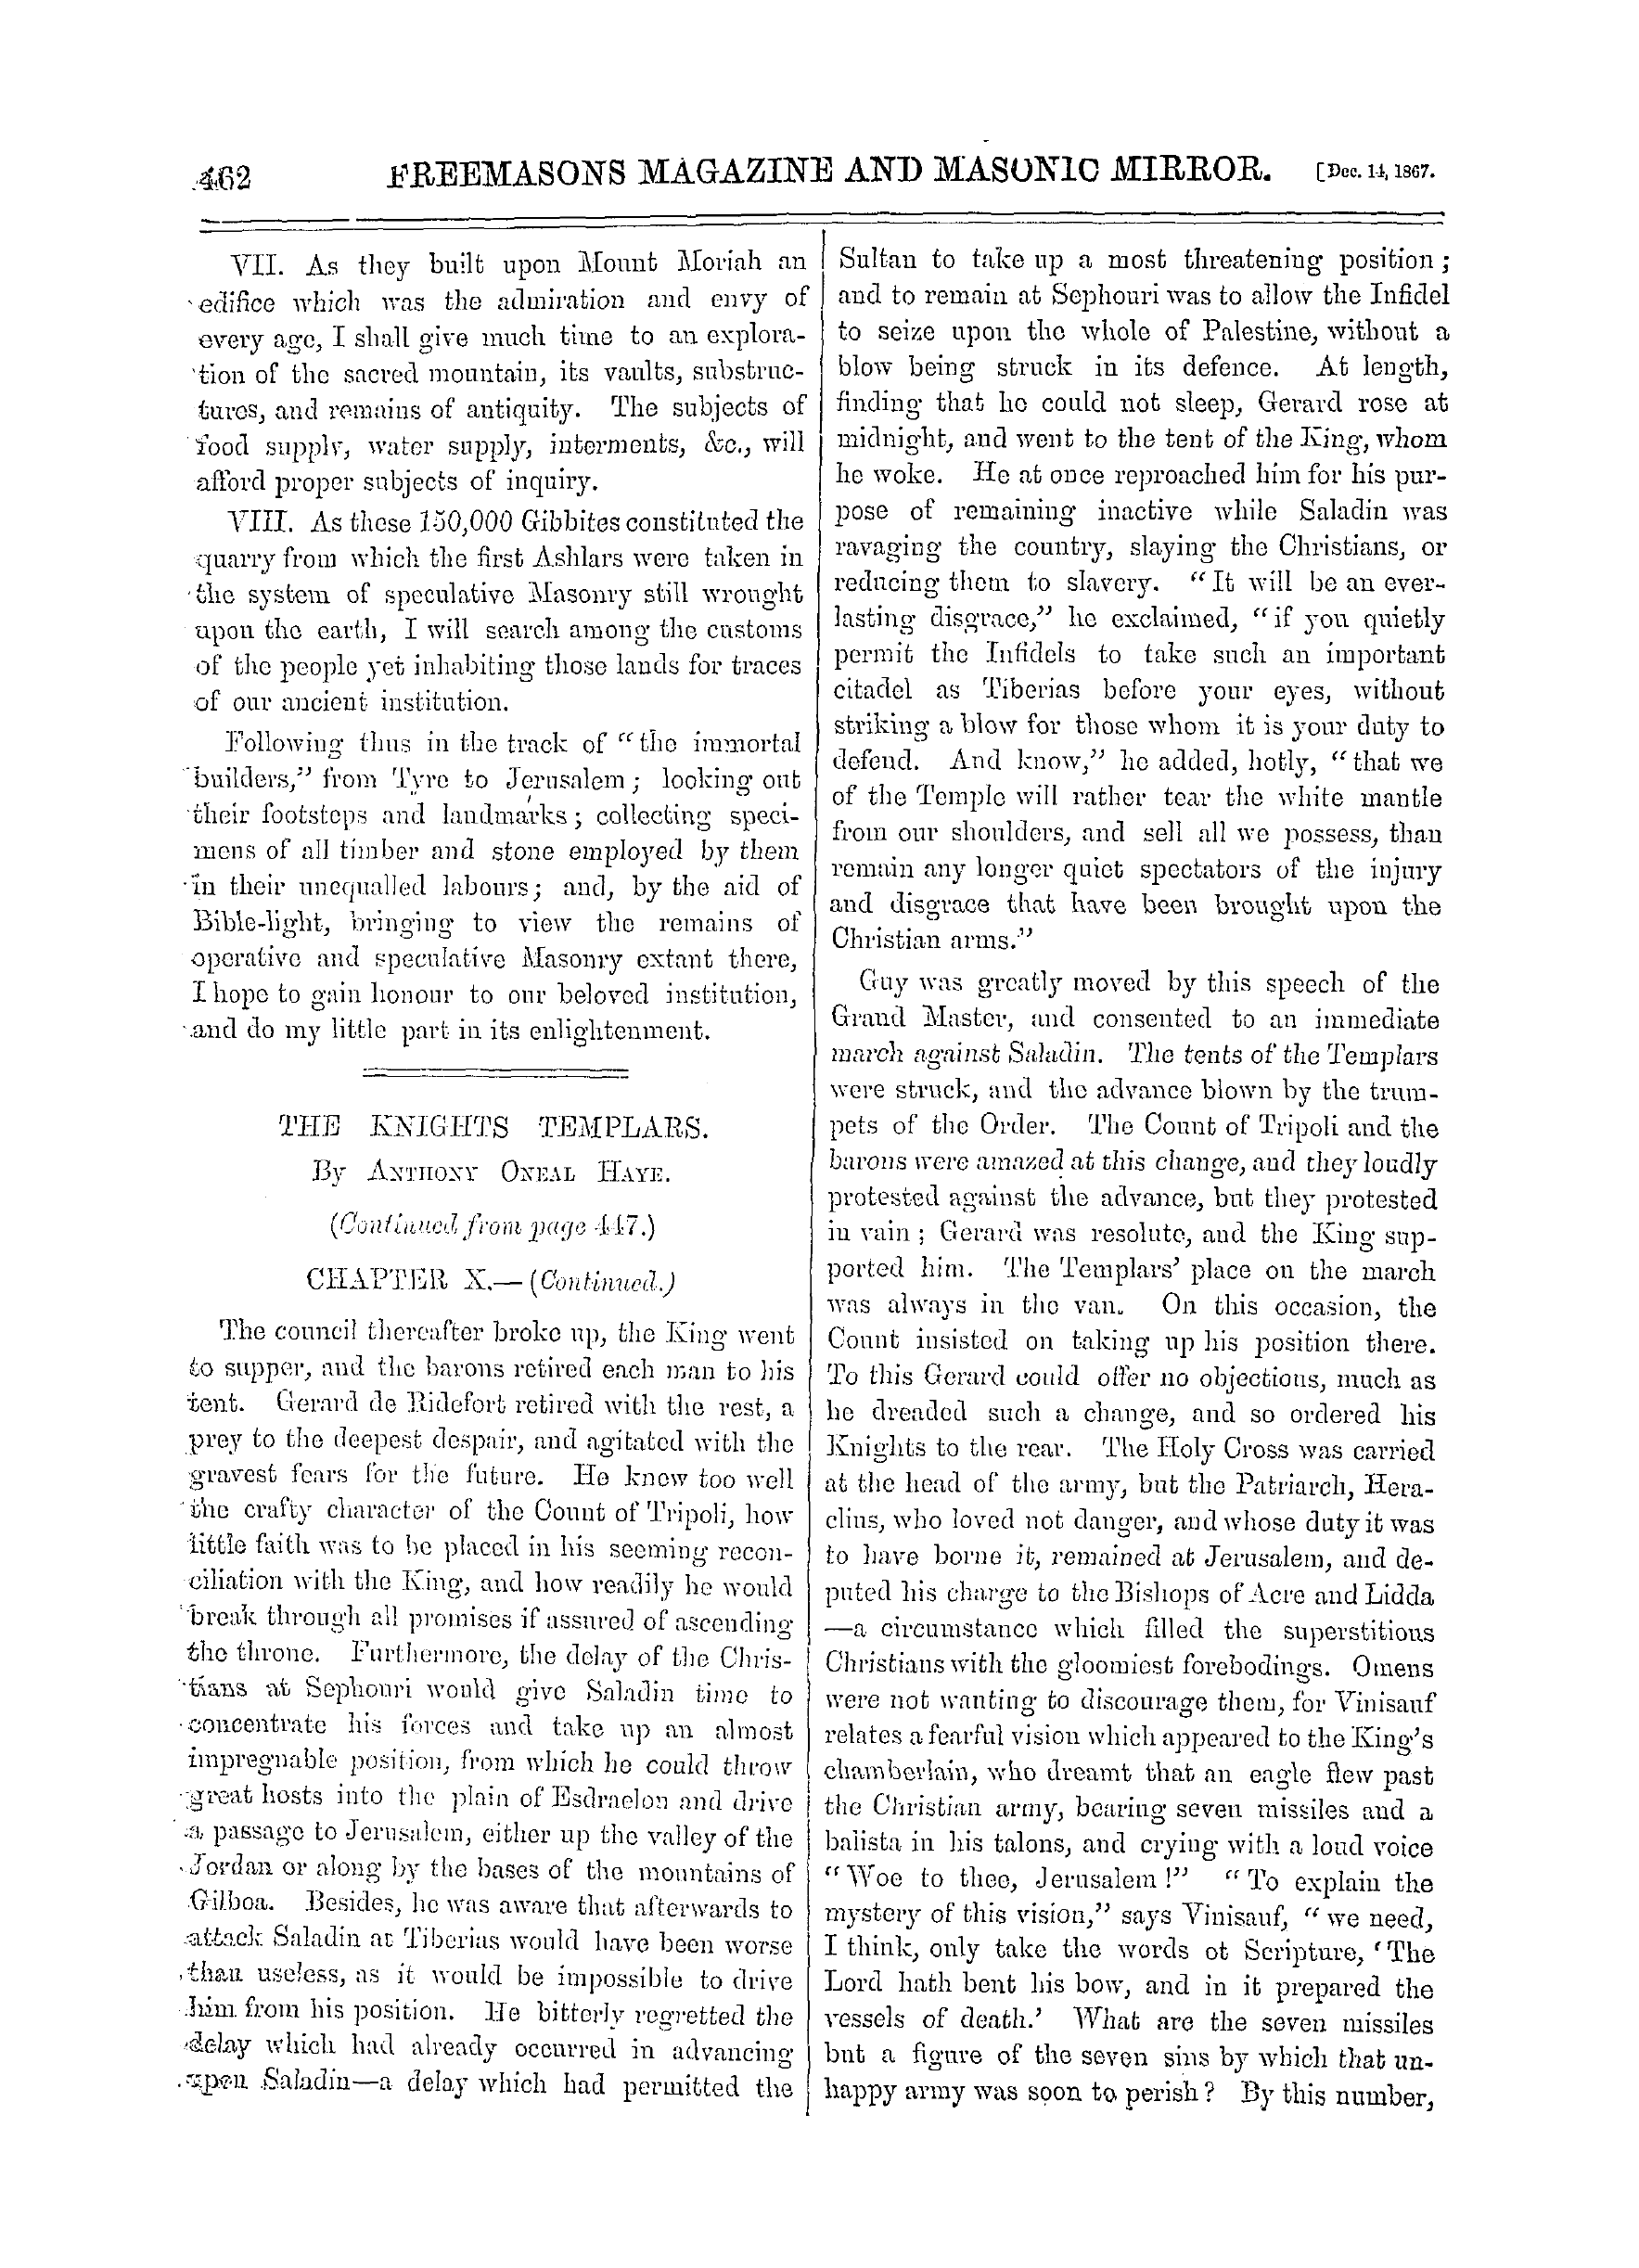 The Freemasons' Monthly Magazine: 1867-12-14: 2